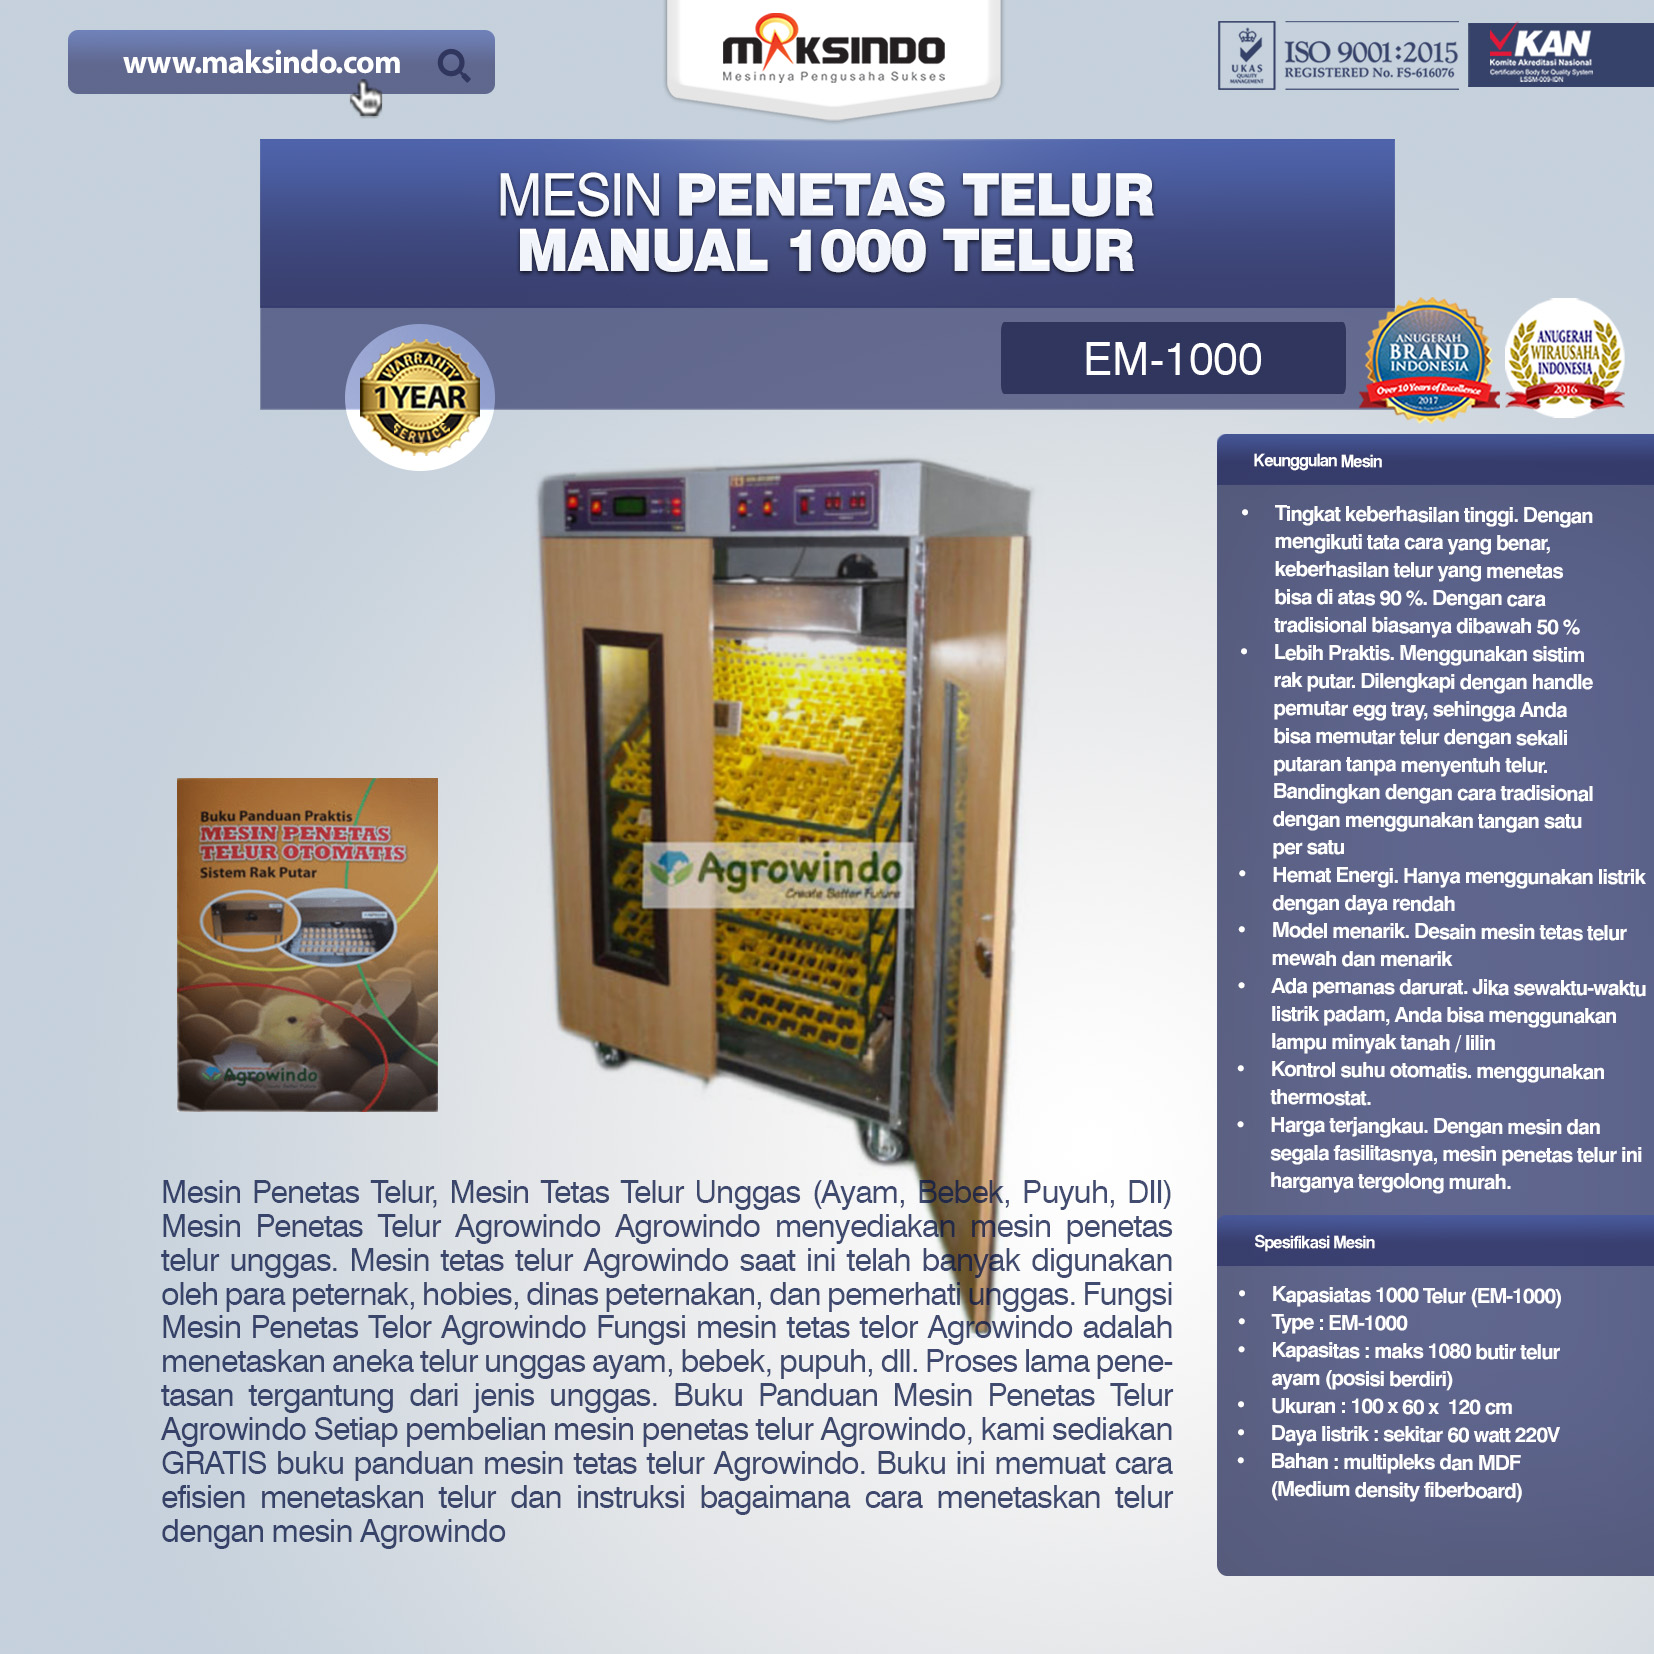 Jual Mesin Penetas Telur Manual 1000 Telur (EM-1000) di Bogor